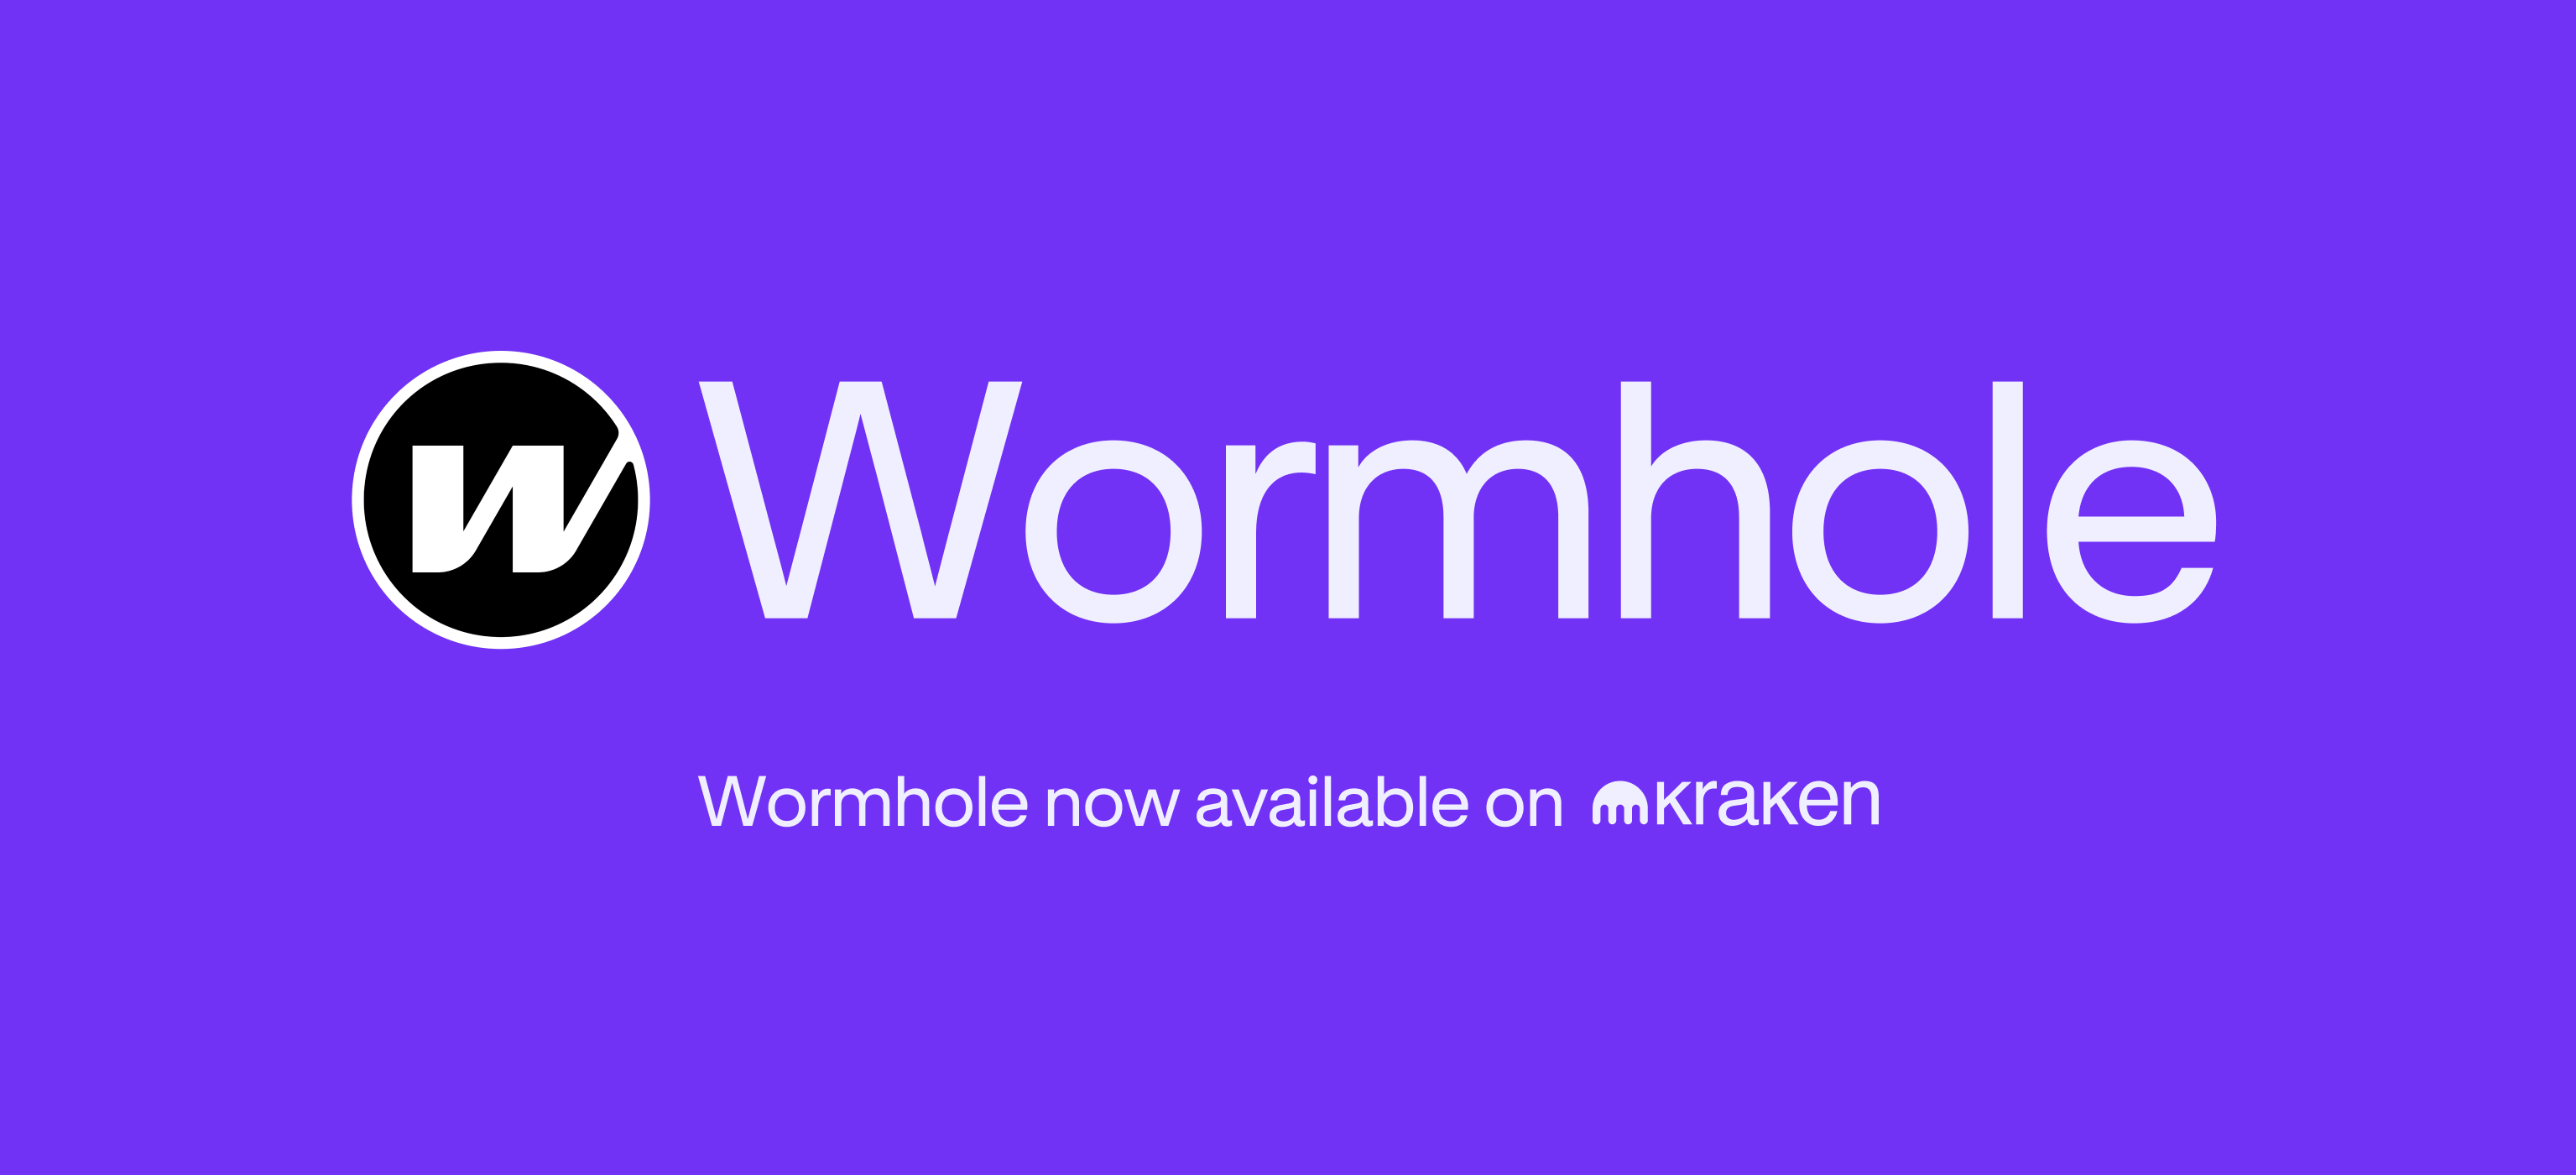 De handel in Wormhole (W) begint op 3 april - stort nu